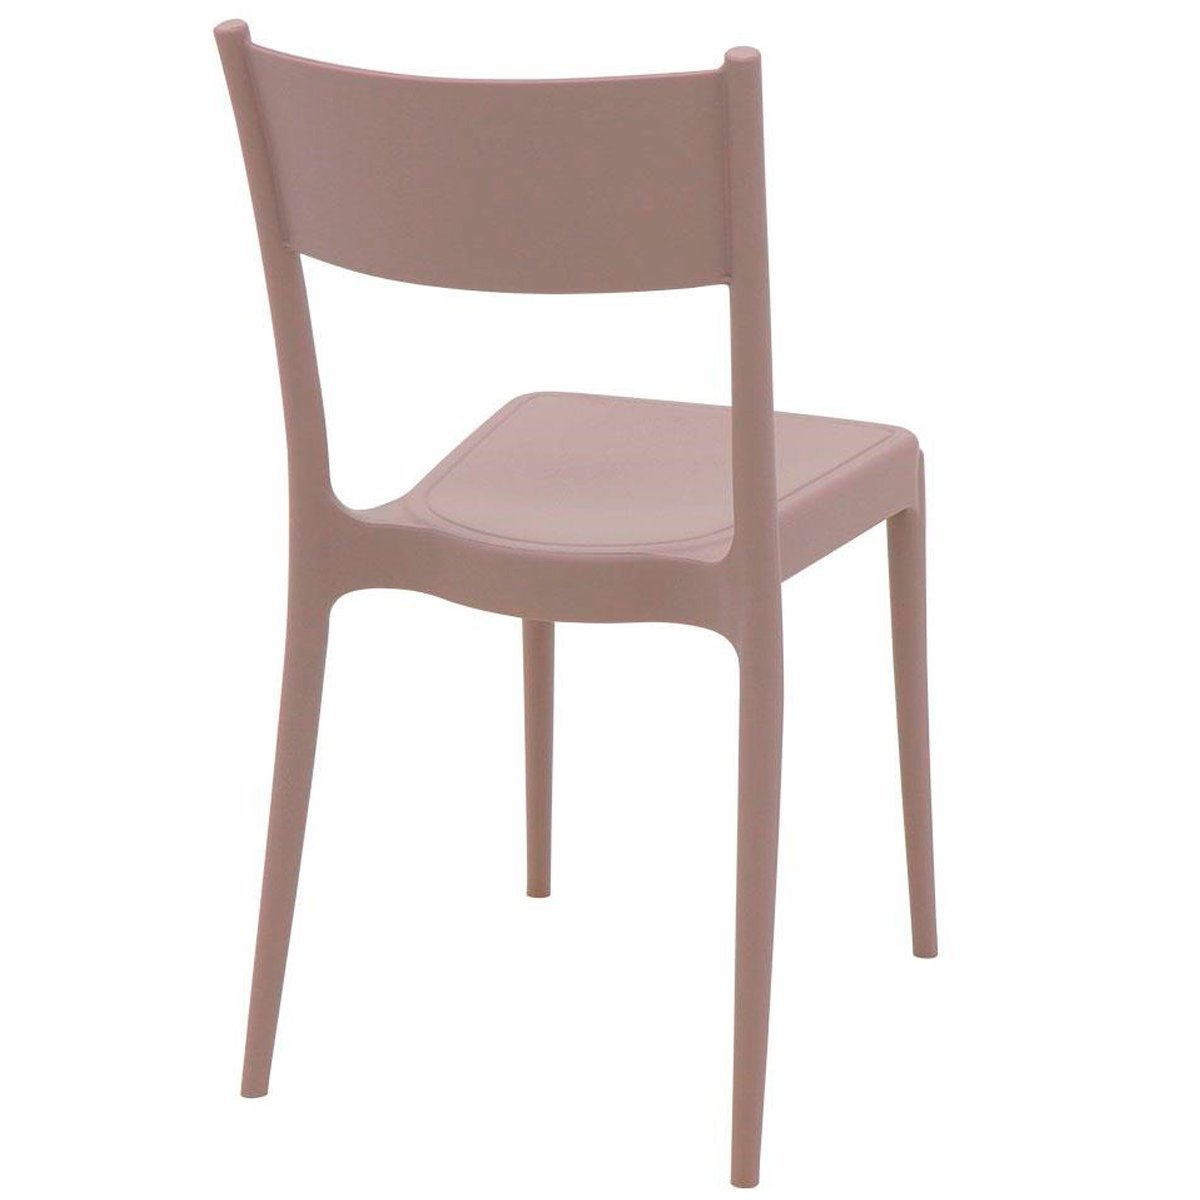 Conjunto 4 Cadeiras de Polipropileno e Fibra de Vidro Summa Eco Diana - Tramontina - Camurça 92030/4 - 2